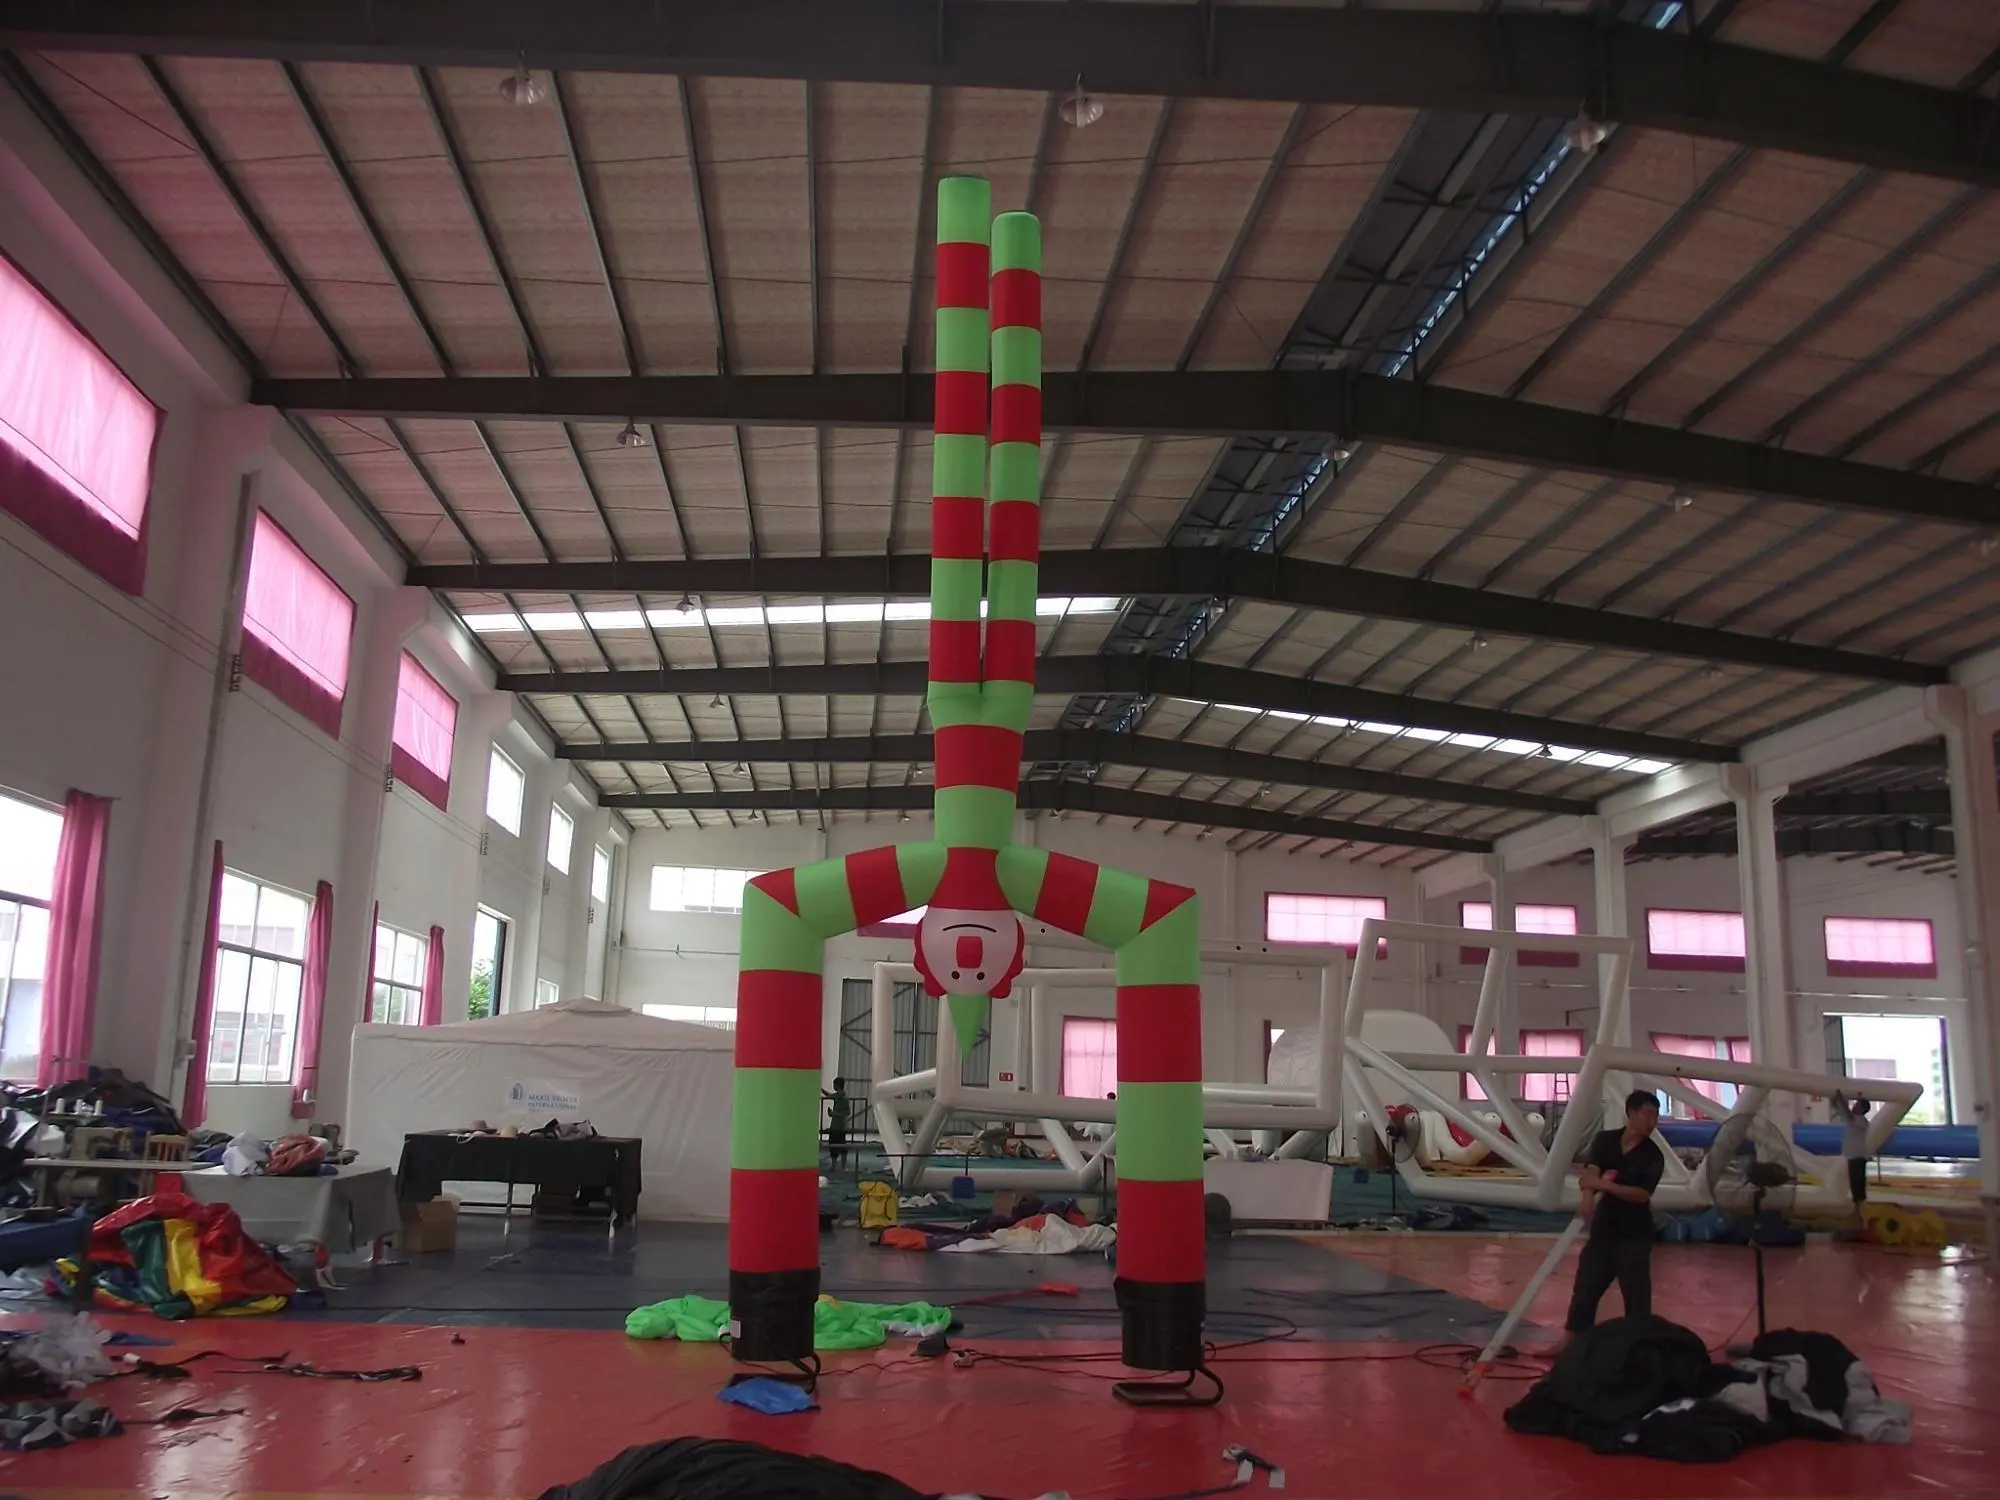 Inflatable Air Dancer GZ Aotian Custom Print Inflatable Air Dancer inflatable Dancing Tube Man advertising Sky For Event Inflatable Air Dancer,Inflatable Dancing